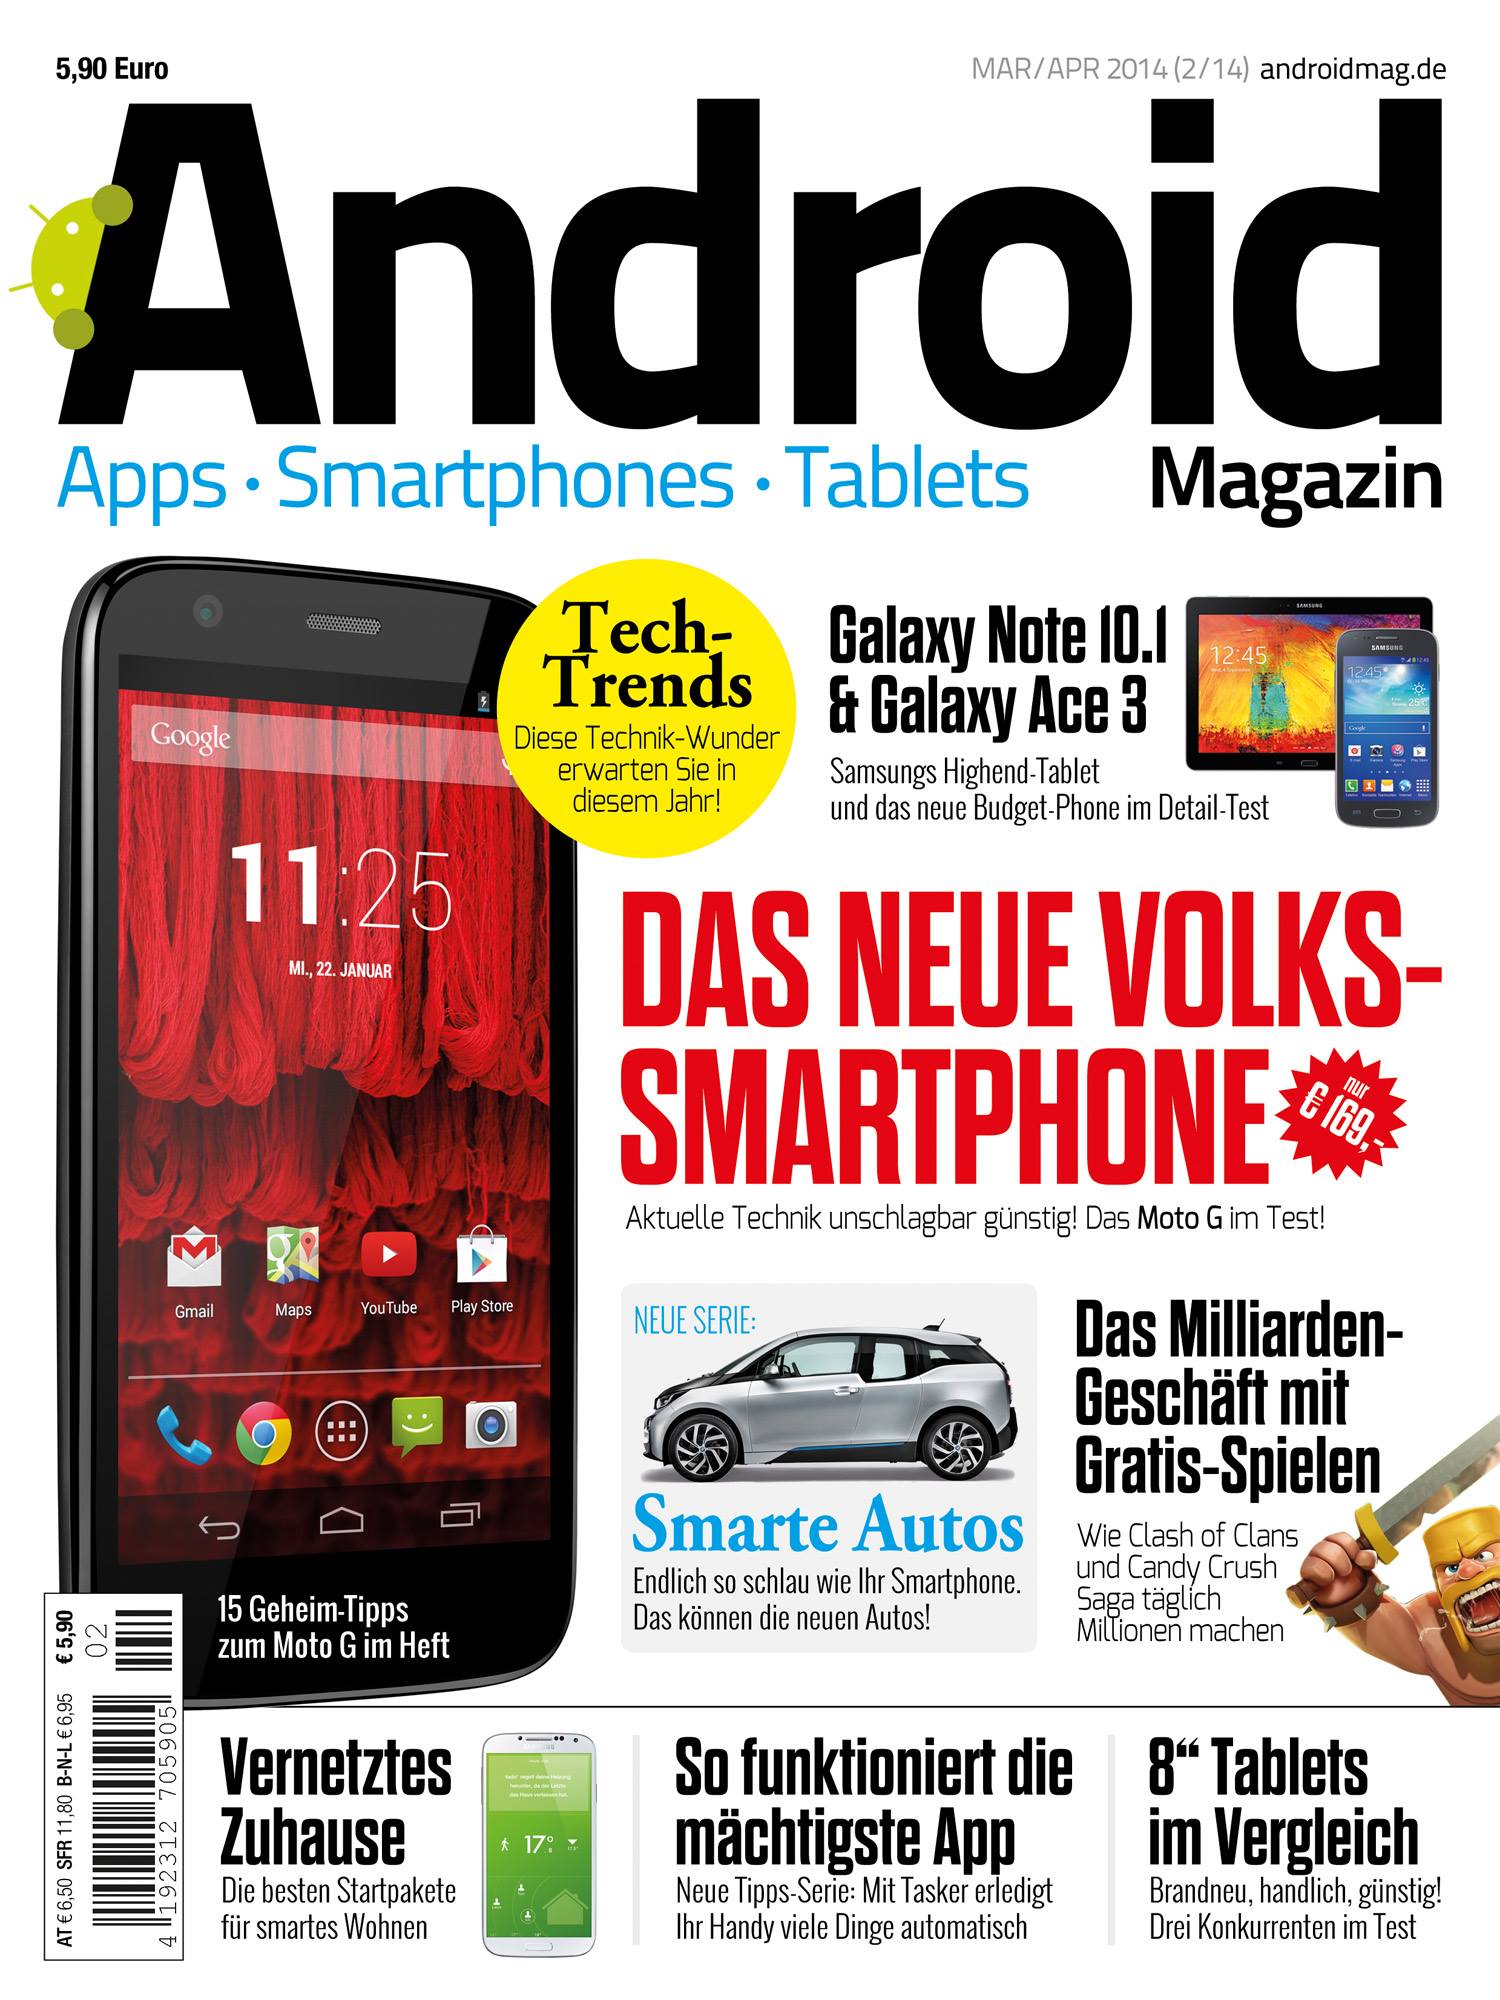 Androidmag.de